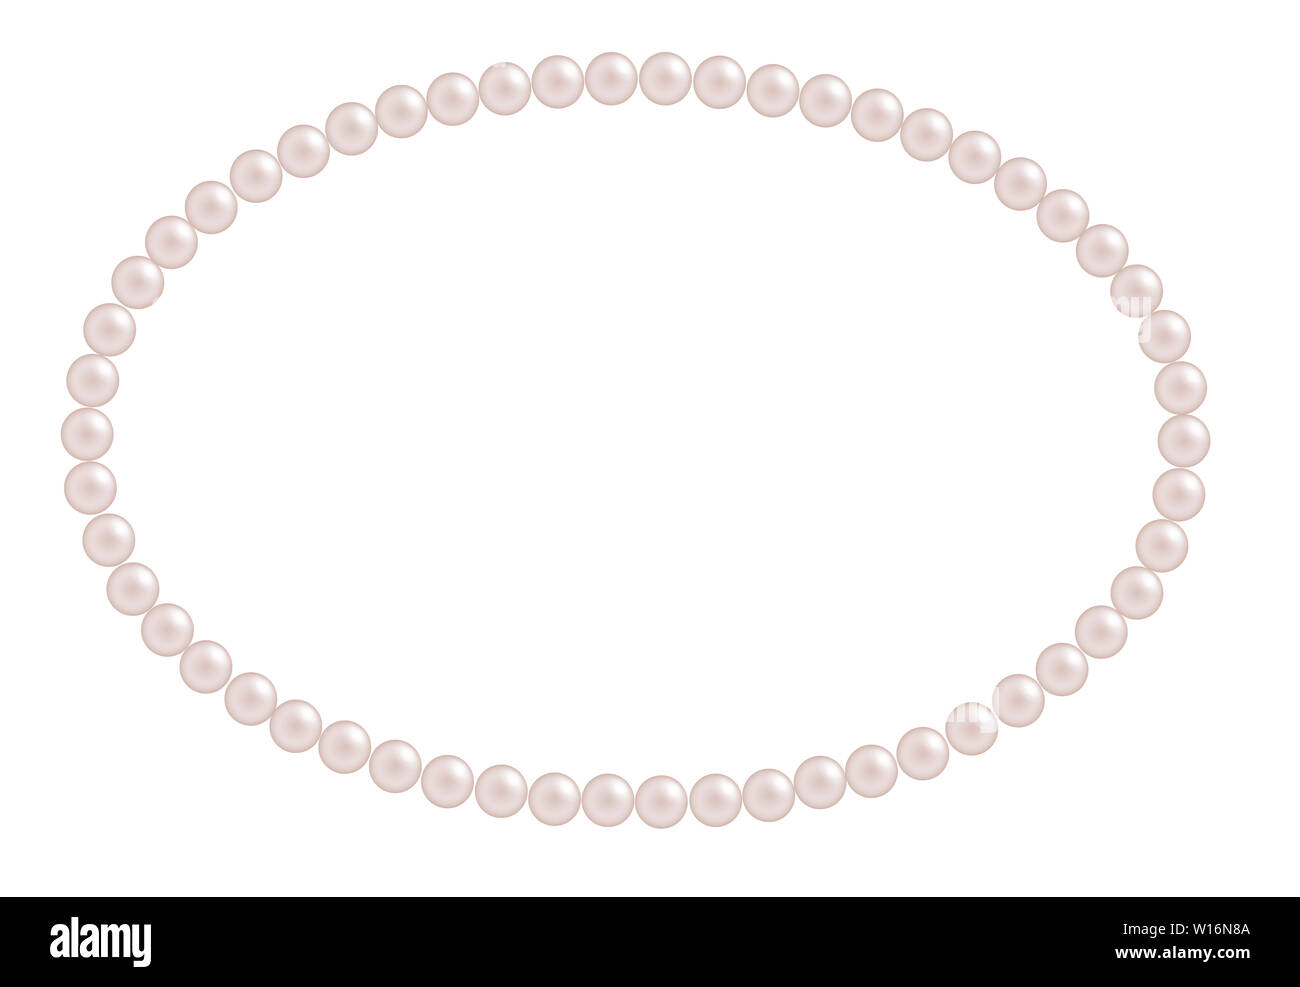 Ovale perles rose cadre décoratif pour l'invitation et les cartes de vœux Banque D'Images